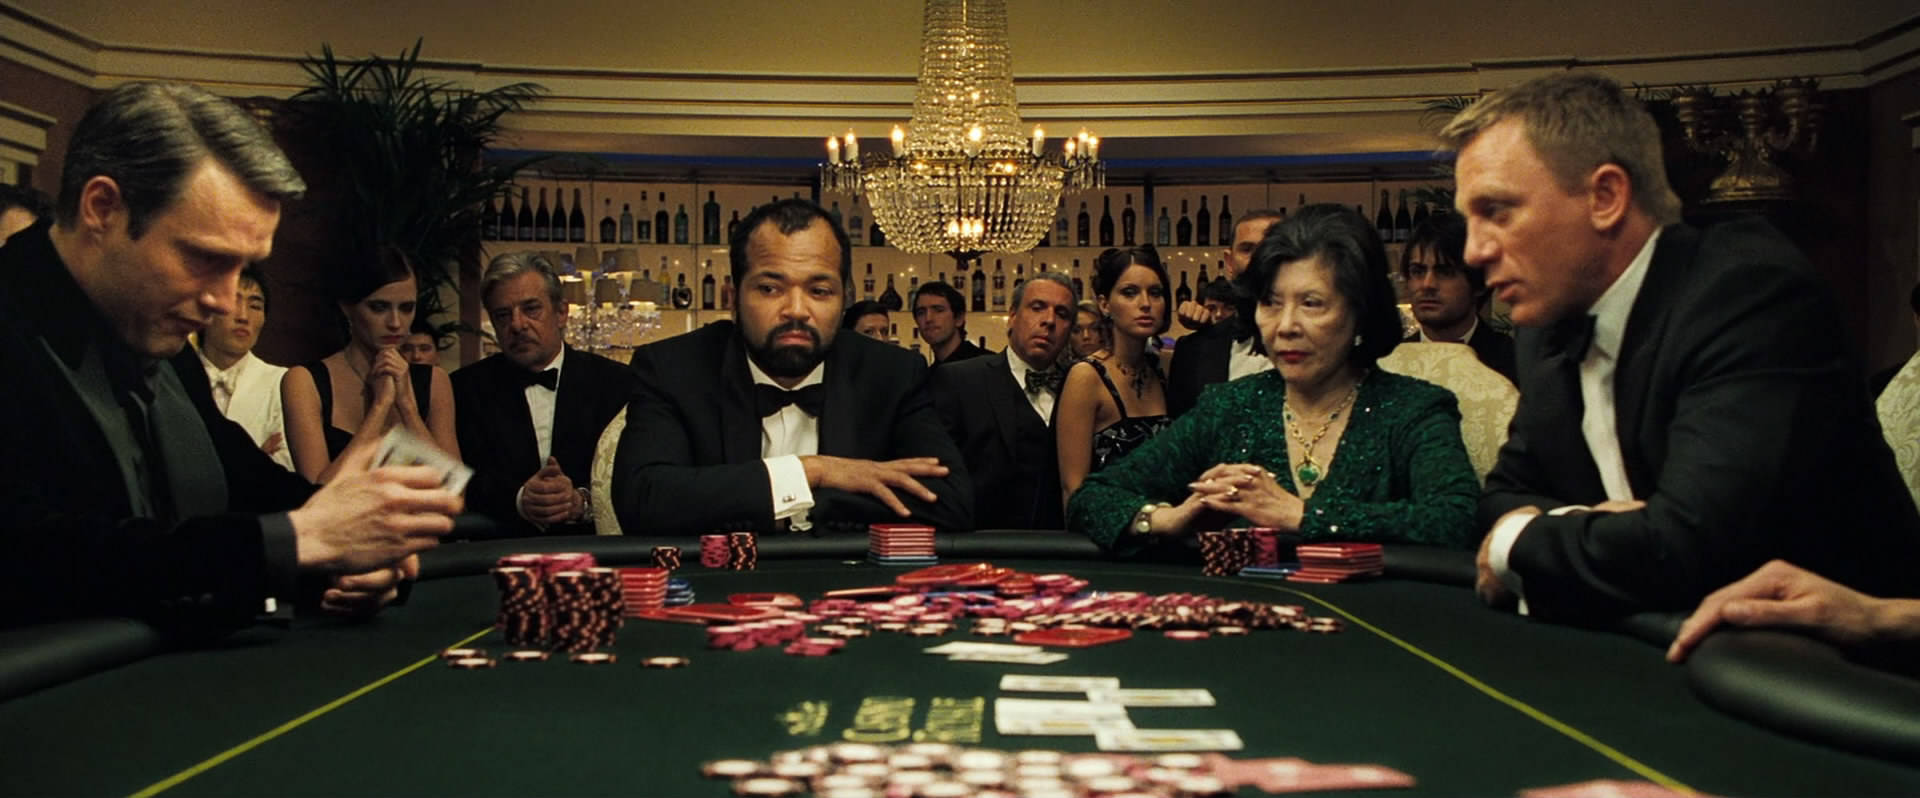 Reicheleute, Die An Einem Pokertisch Spielen Wallpaper